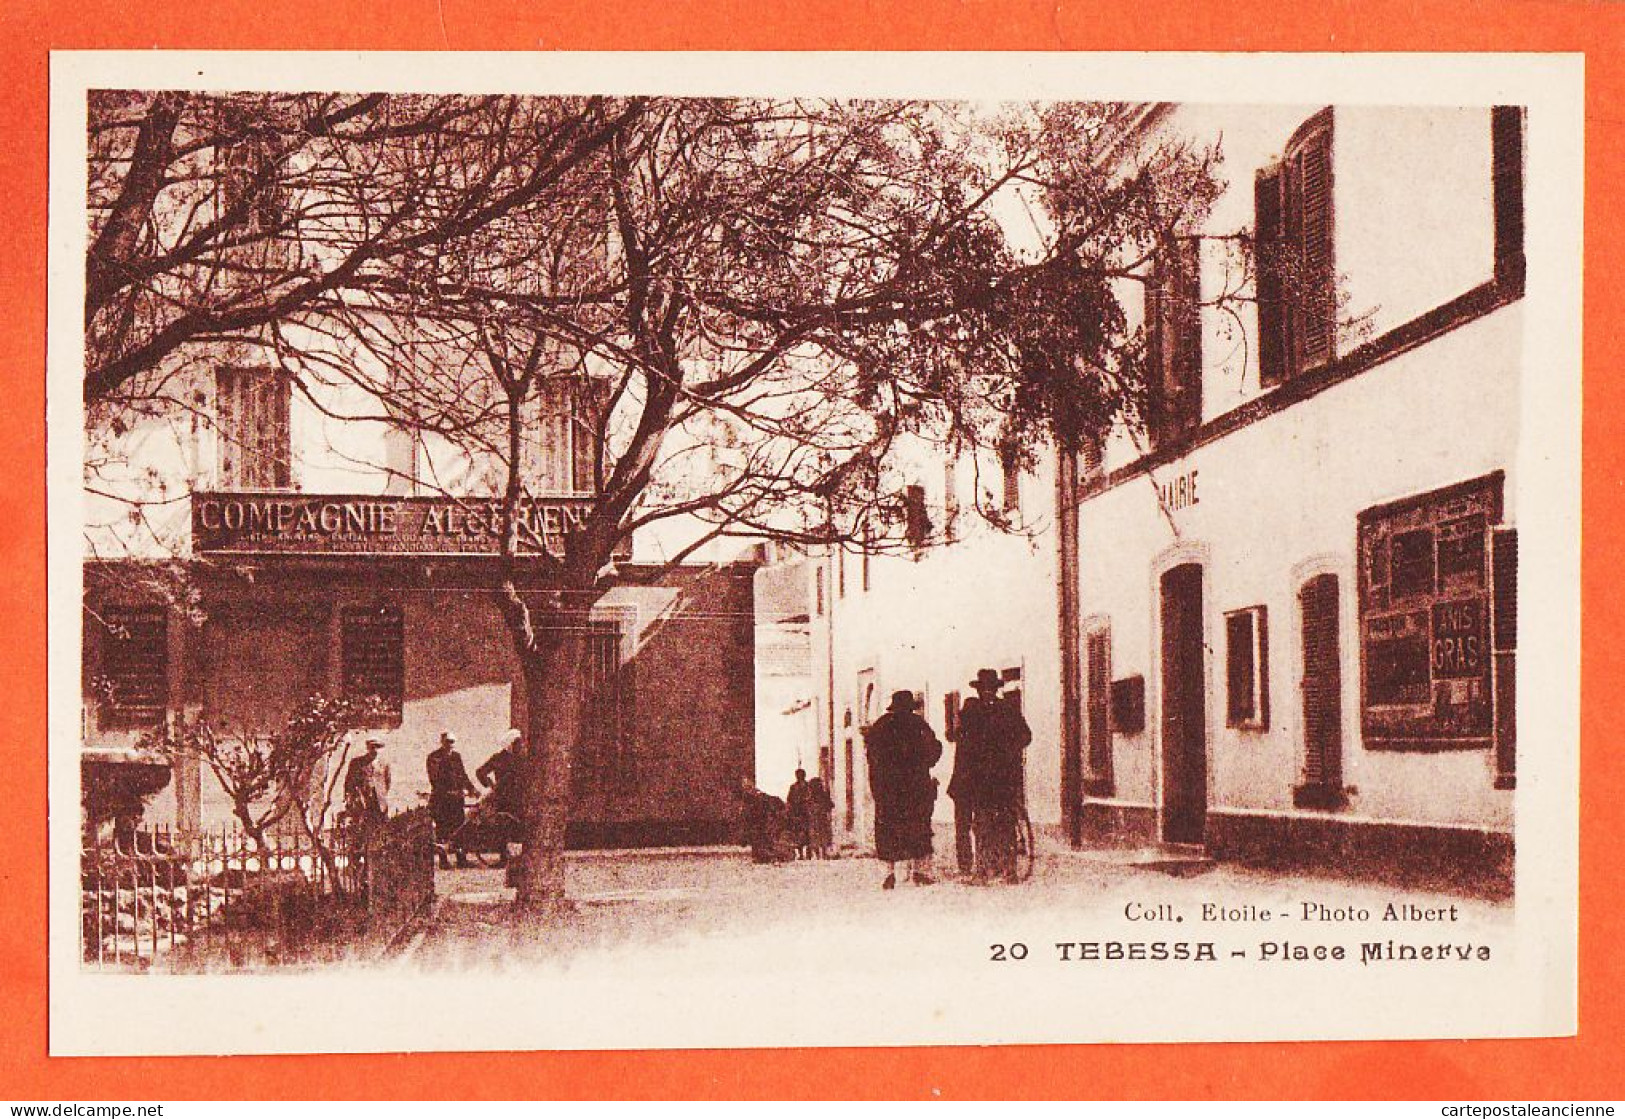 01746 / TEBESSA Algérie Compagnie Algérienne Mairie Place MINERVE 1920s Collection ETOILE Photo ALBERT - Tébessa